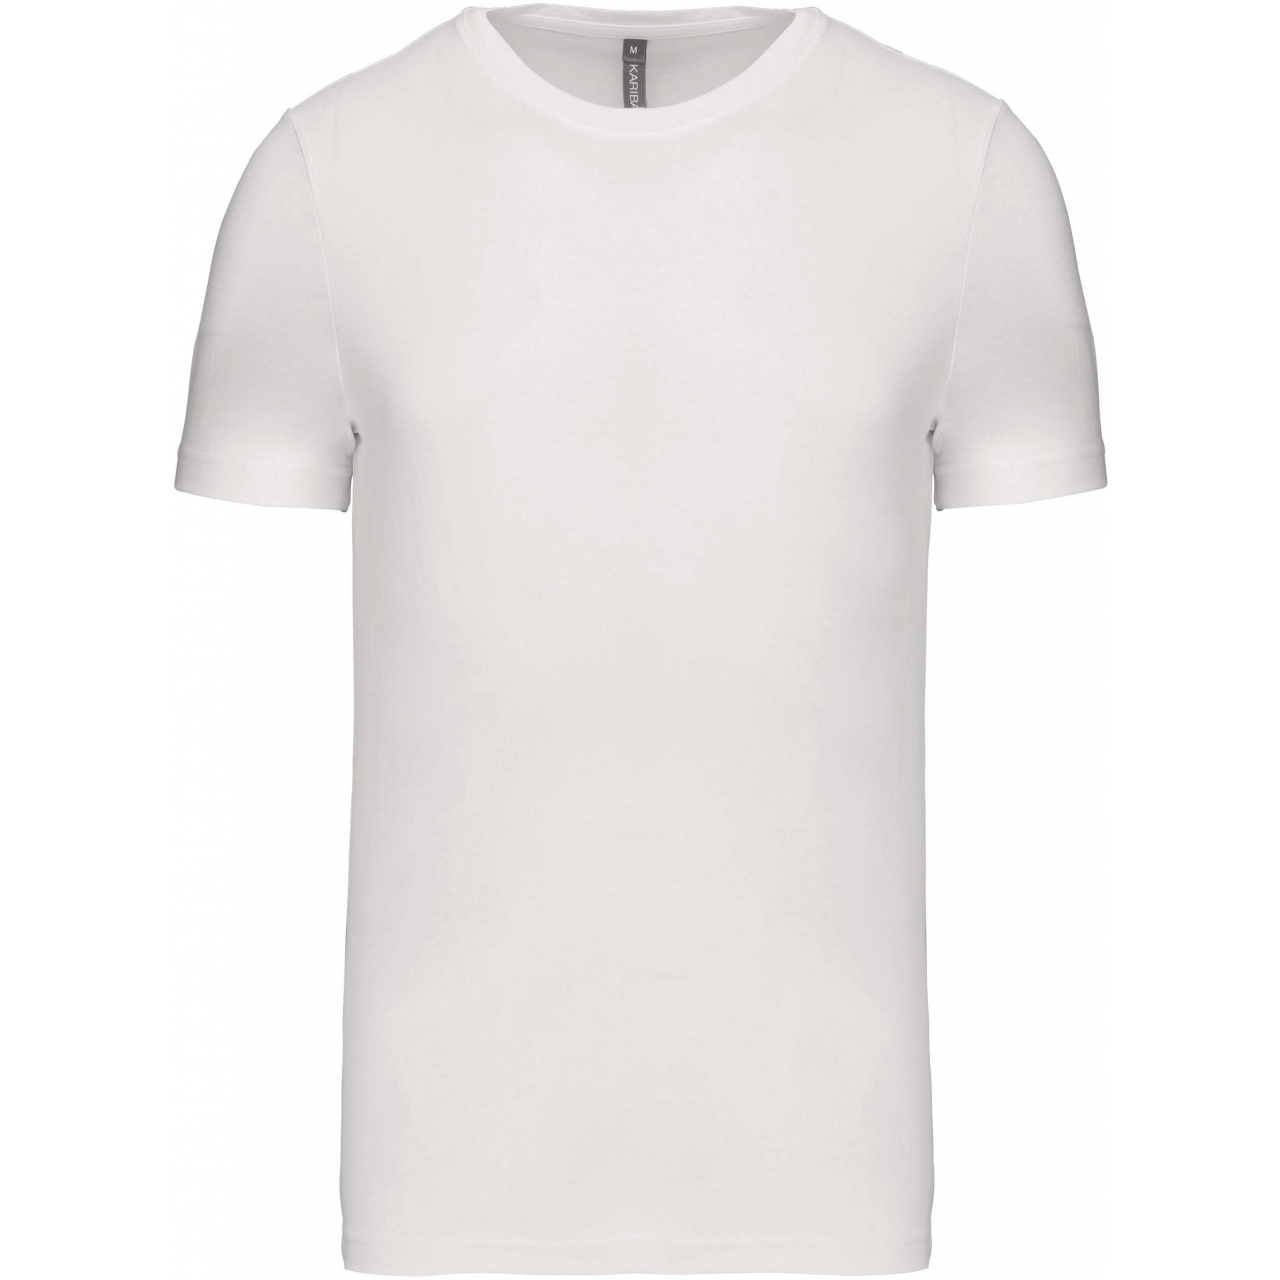 Pánské tričko Kariban krátký rukáv - bílé, 3XL